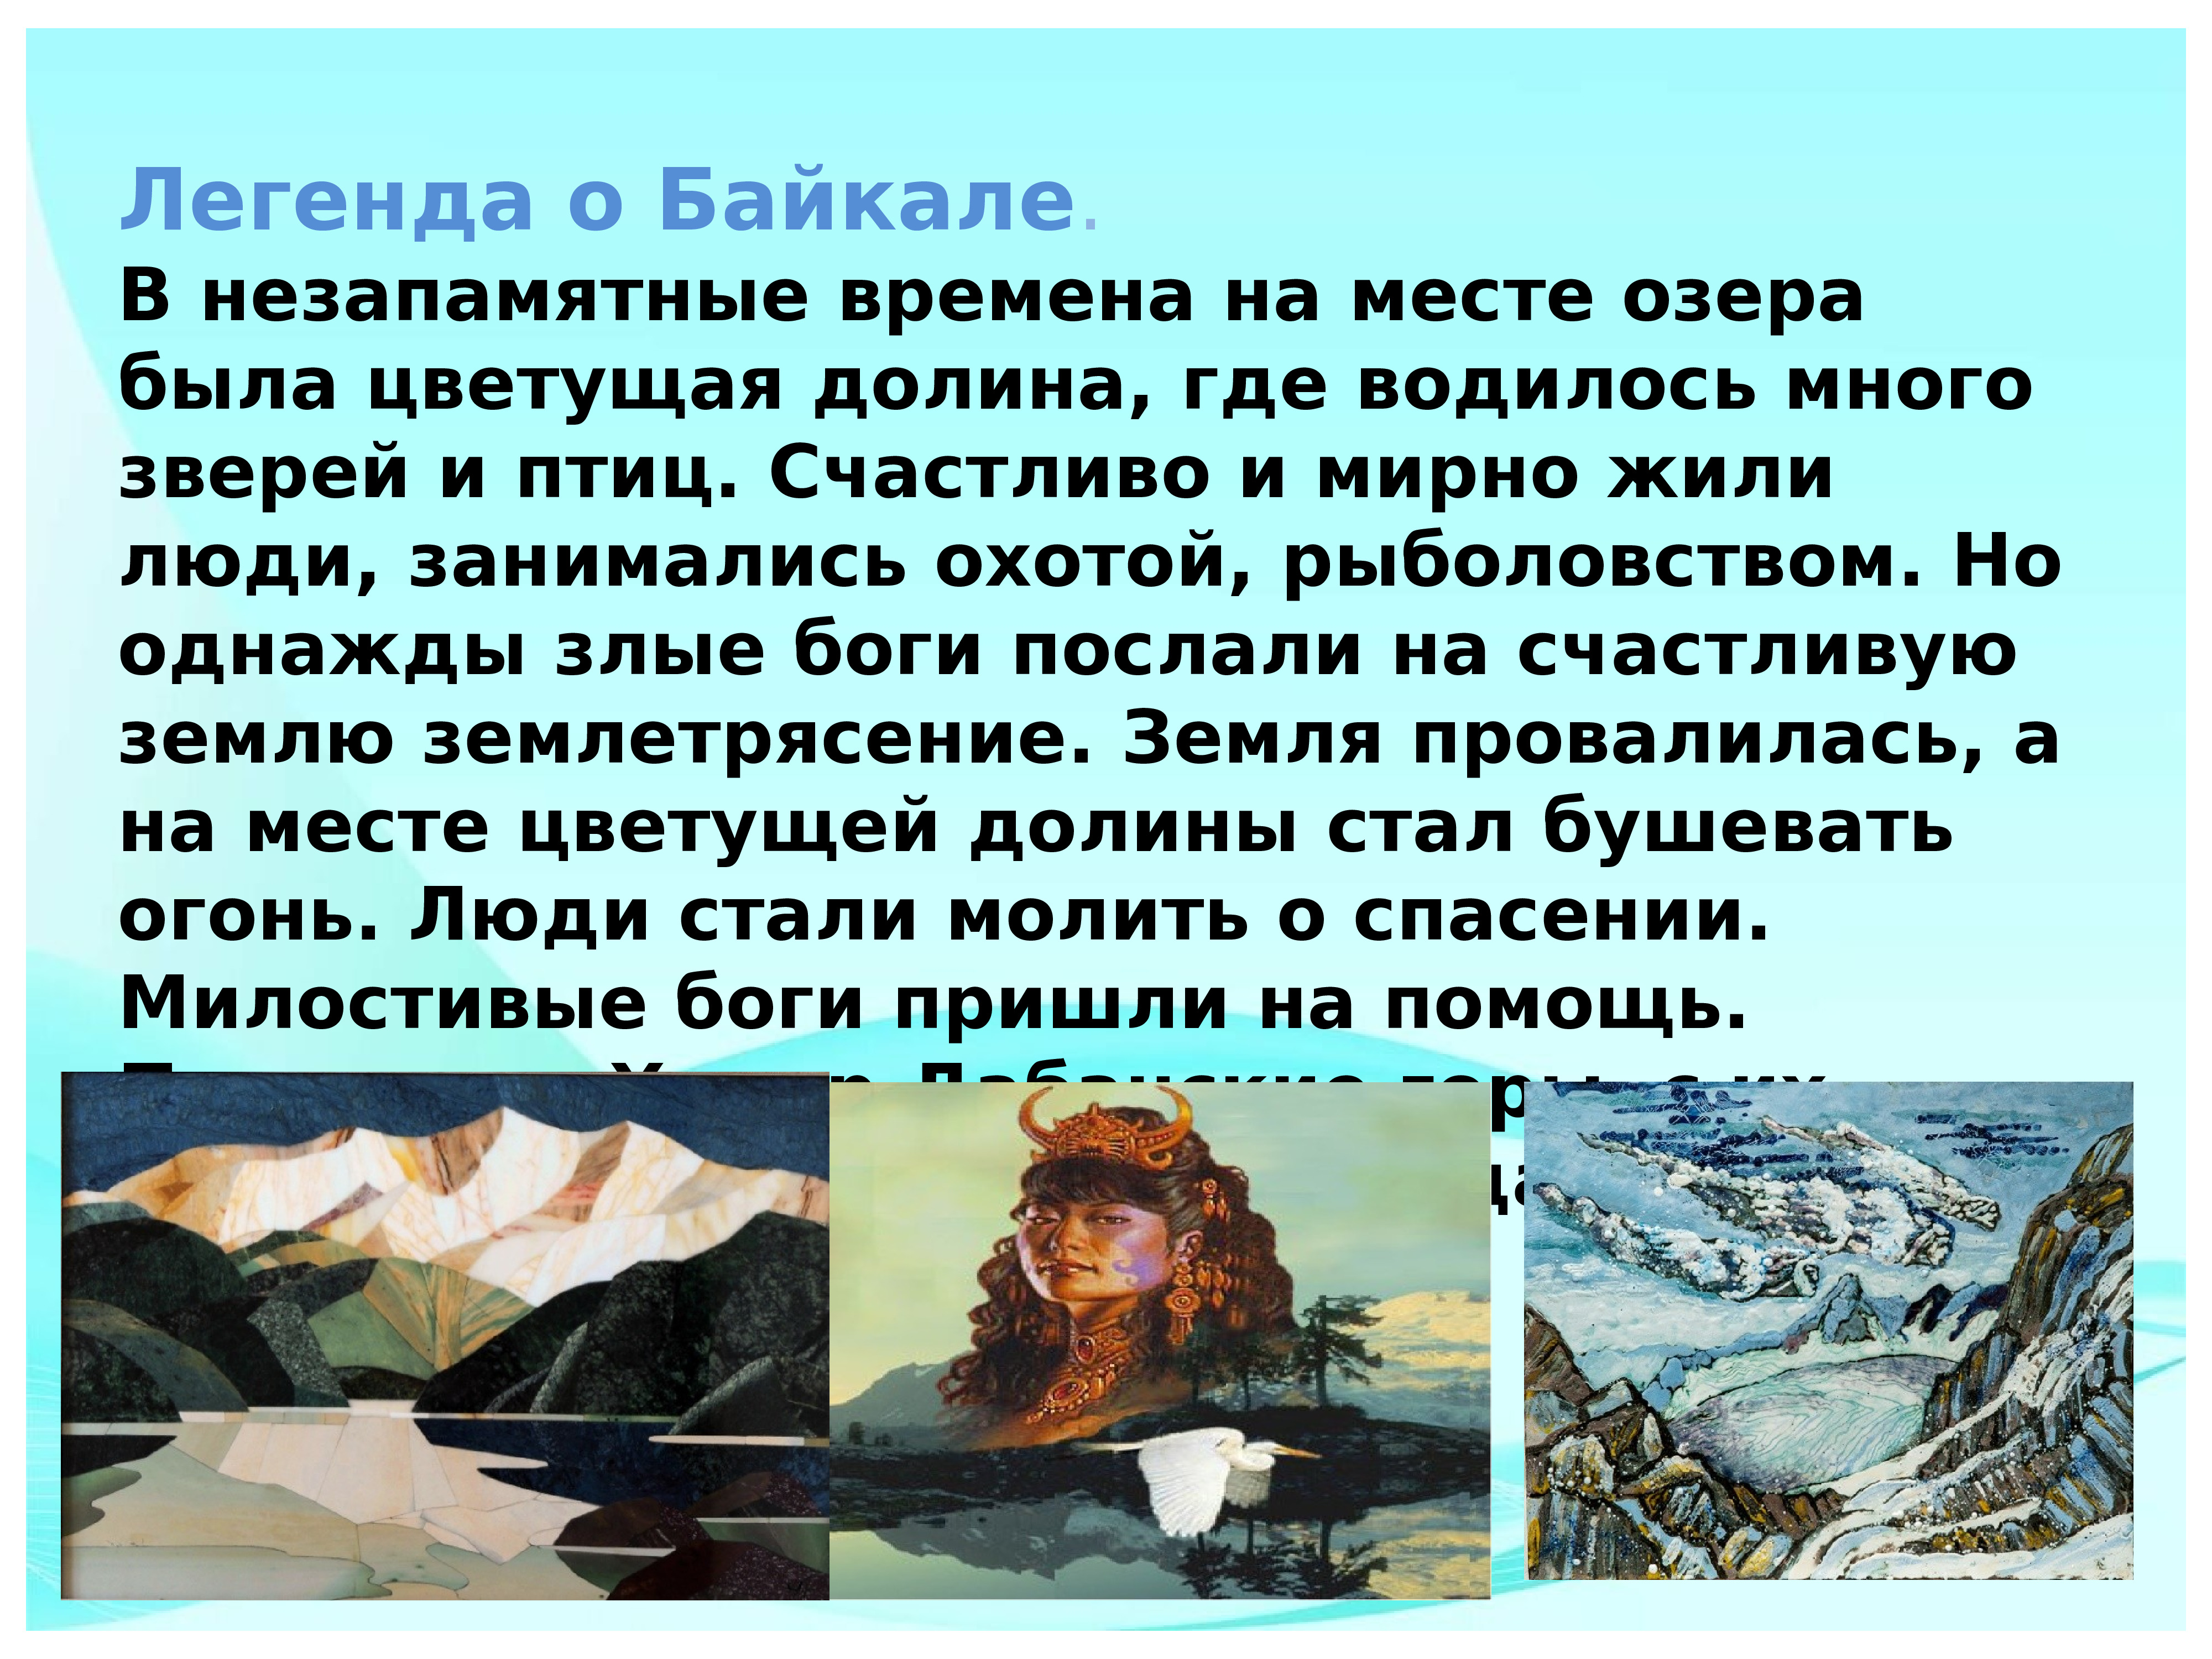 Информация о Байкале